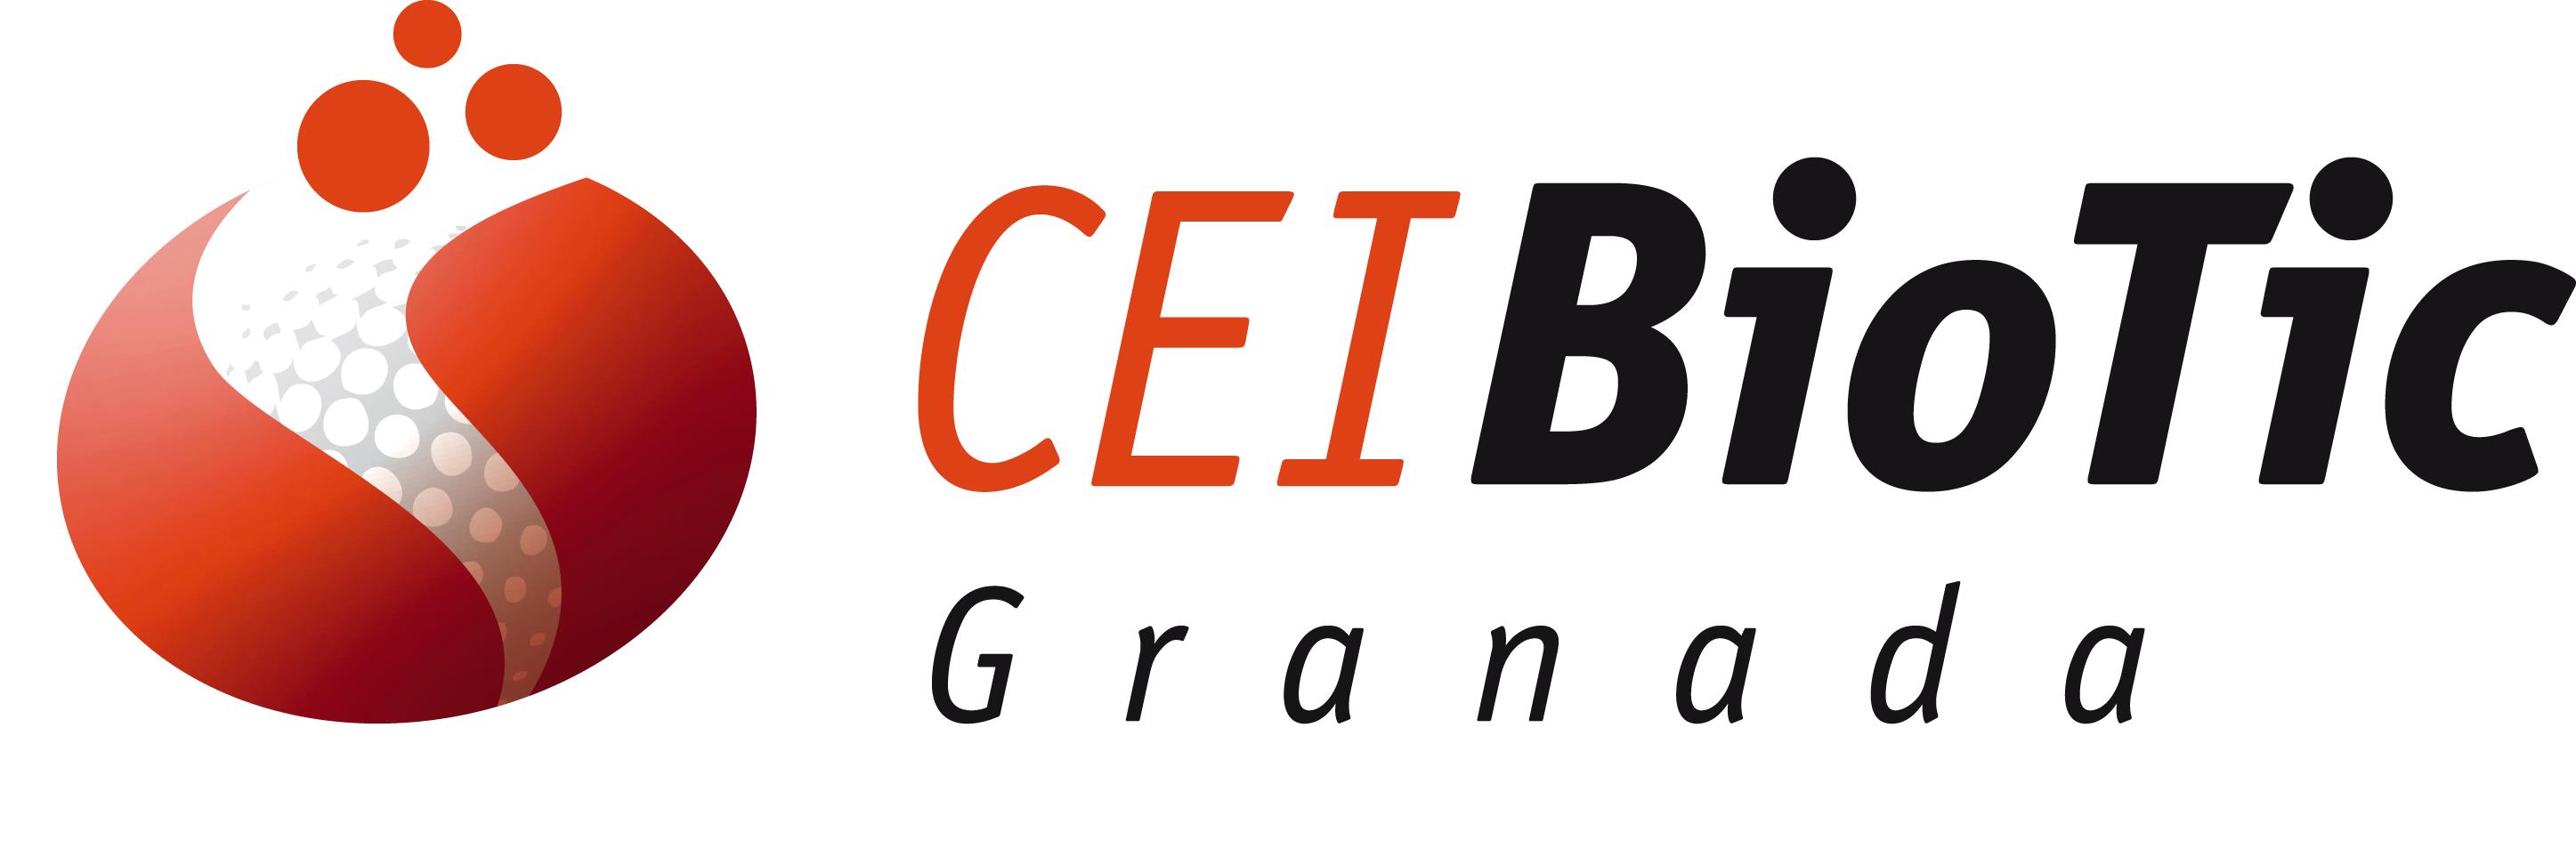 CEI BioTic Granada